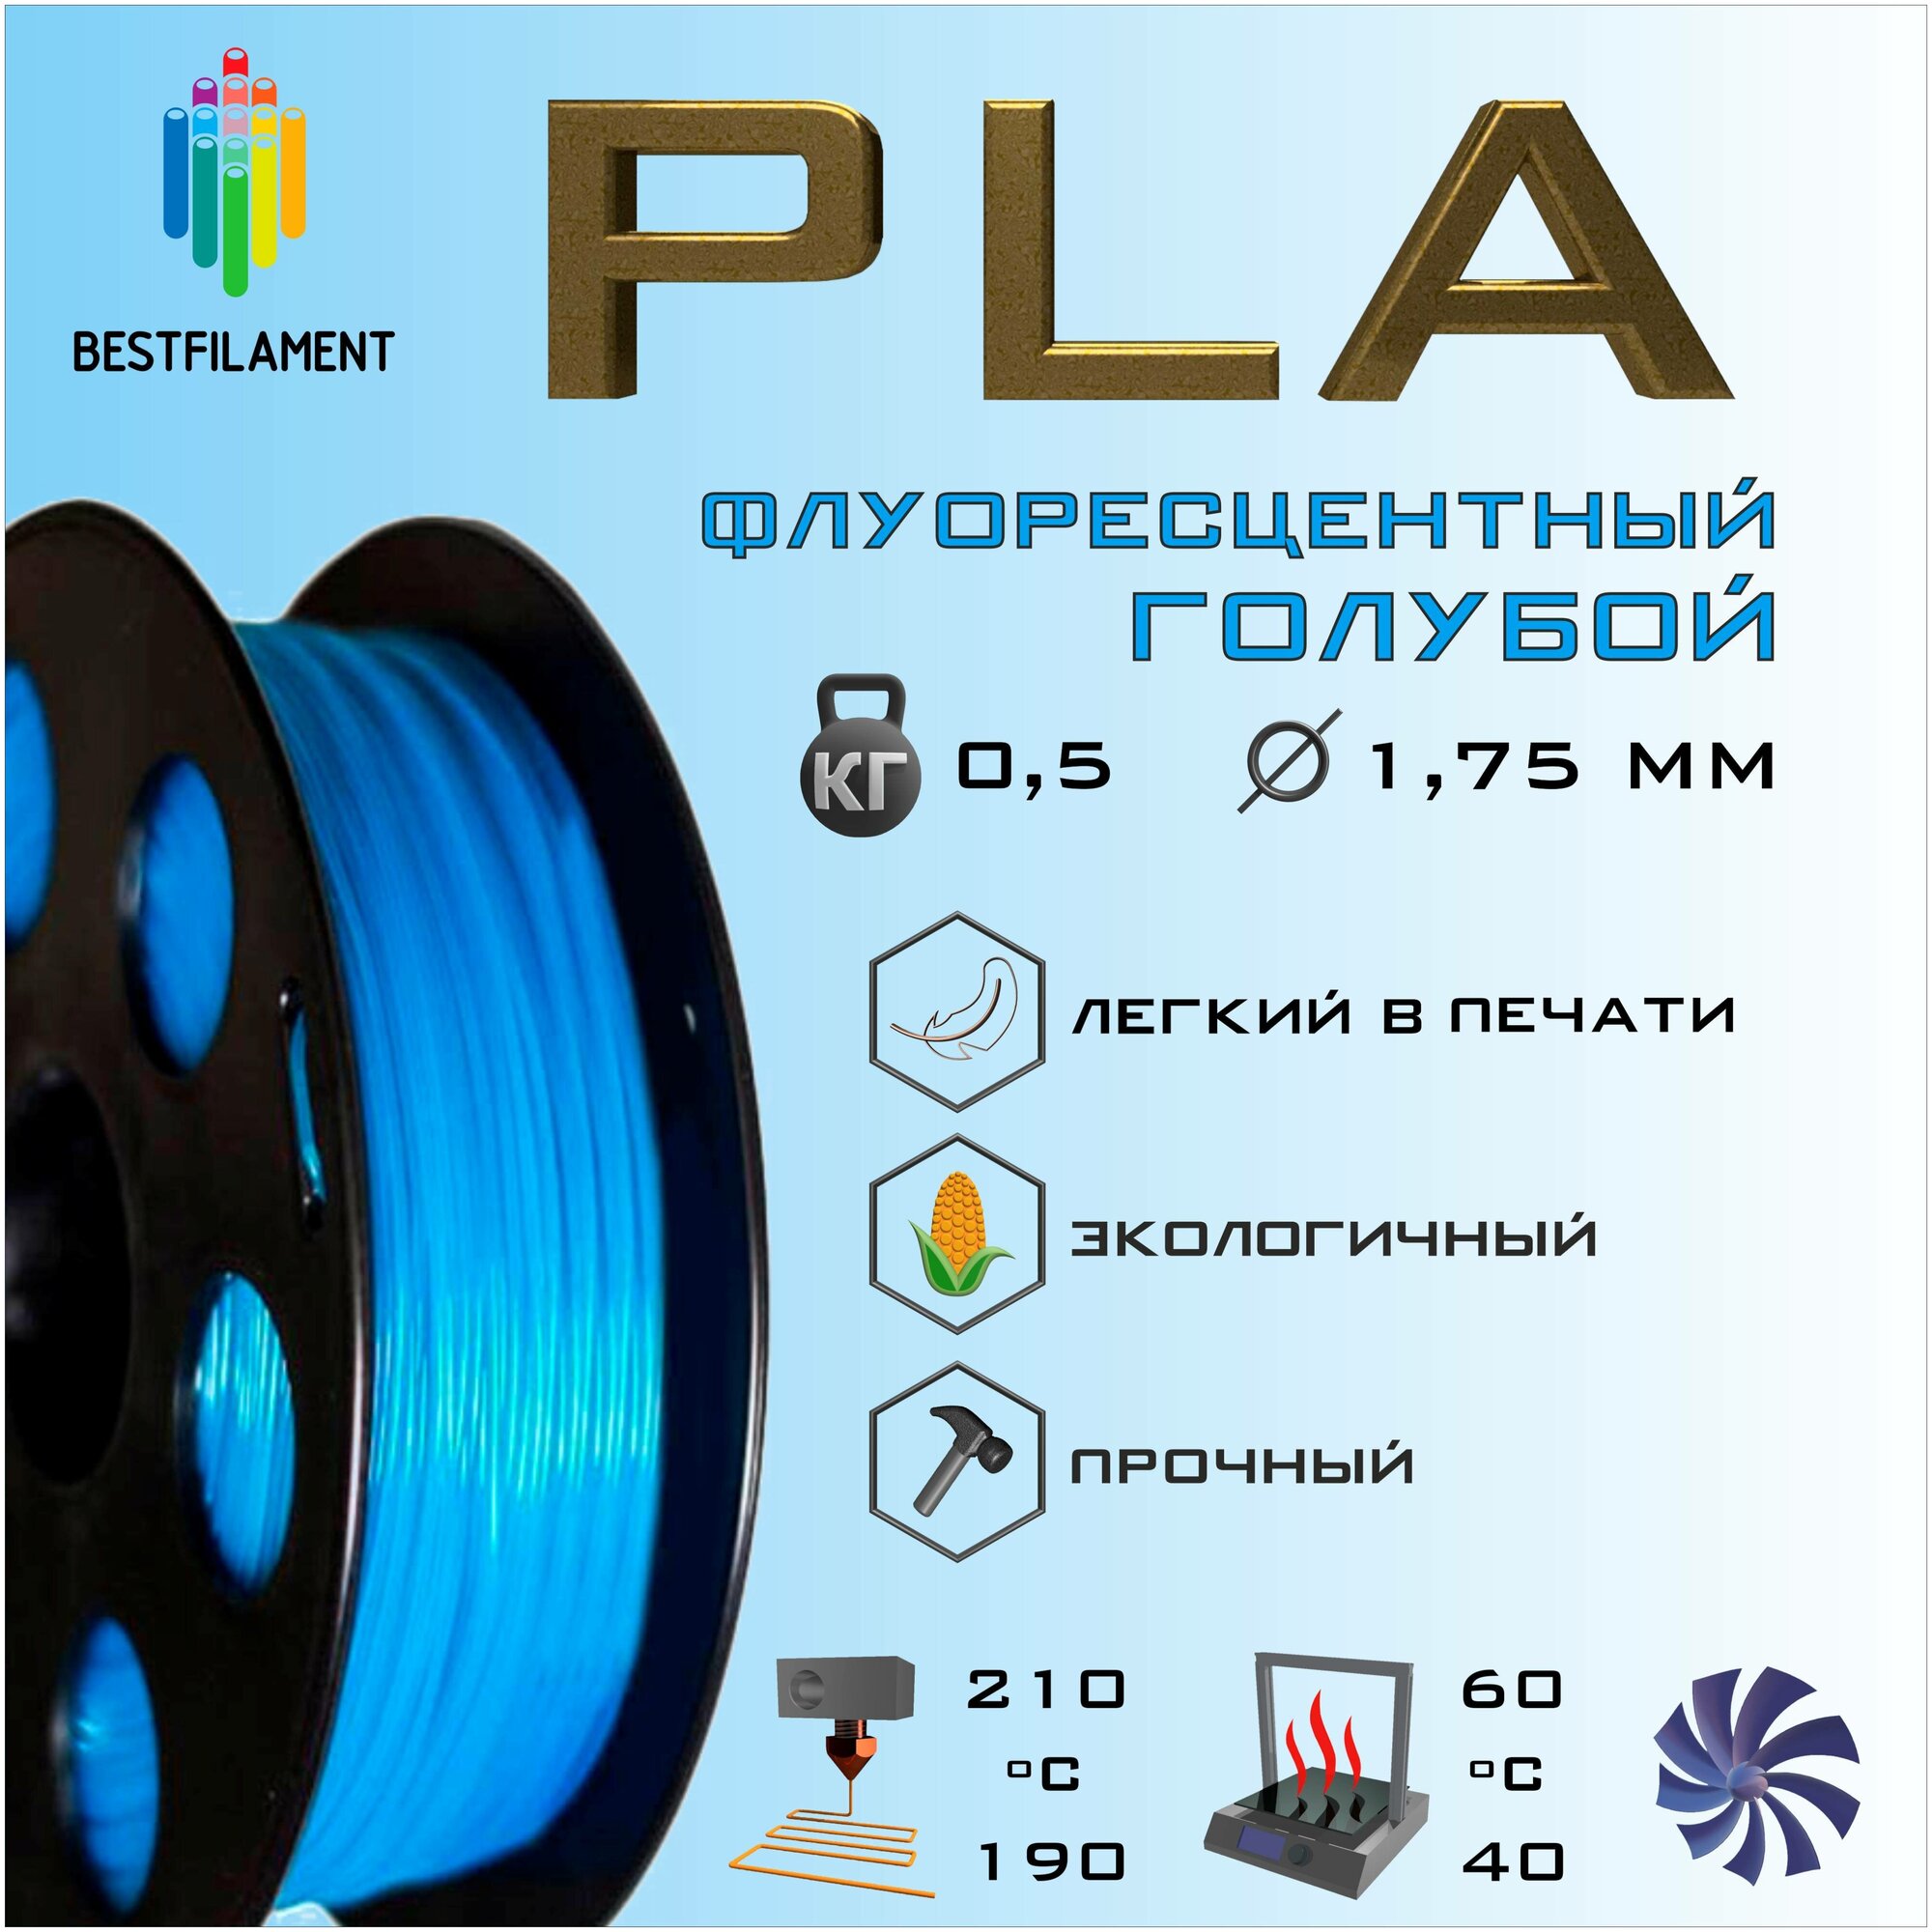 Светящийся в темноте PLA пластик Bestfilament для 3D-принтеров цвет лимонный 05 кг (175 мм)